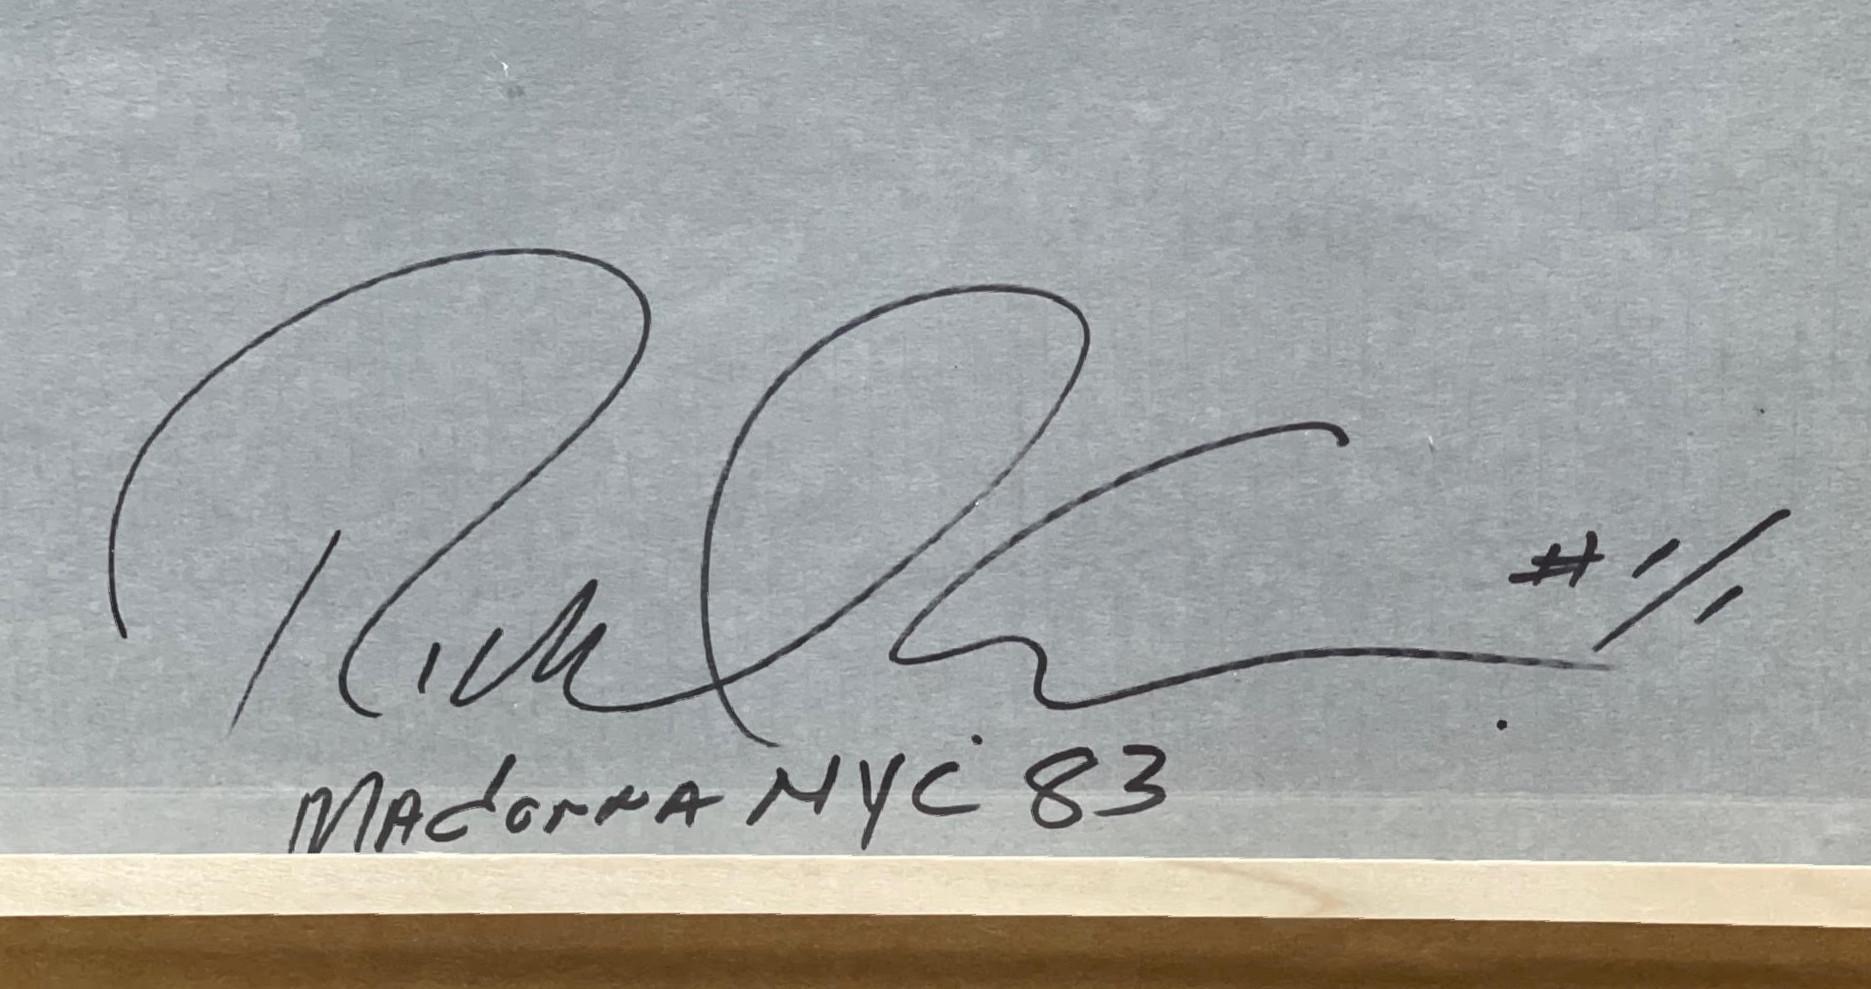 Richard Corman
Madonna NYC '83 (handsigniert und nummeriert 1/1 vom Fotografen auf der Vorder- und Rückseite), 2010
Fotografischer Schwarz-Weiß-Abzug auf Archivpigmentpapier
Handsigniert, betitelt und nummeriert 1/1 auf der Vorder- und Rückseite